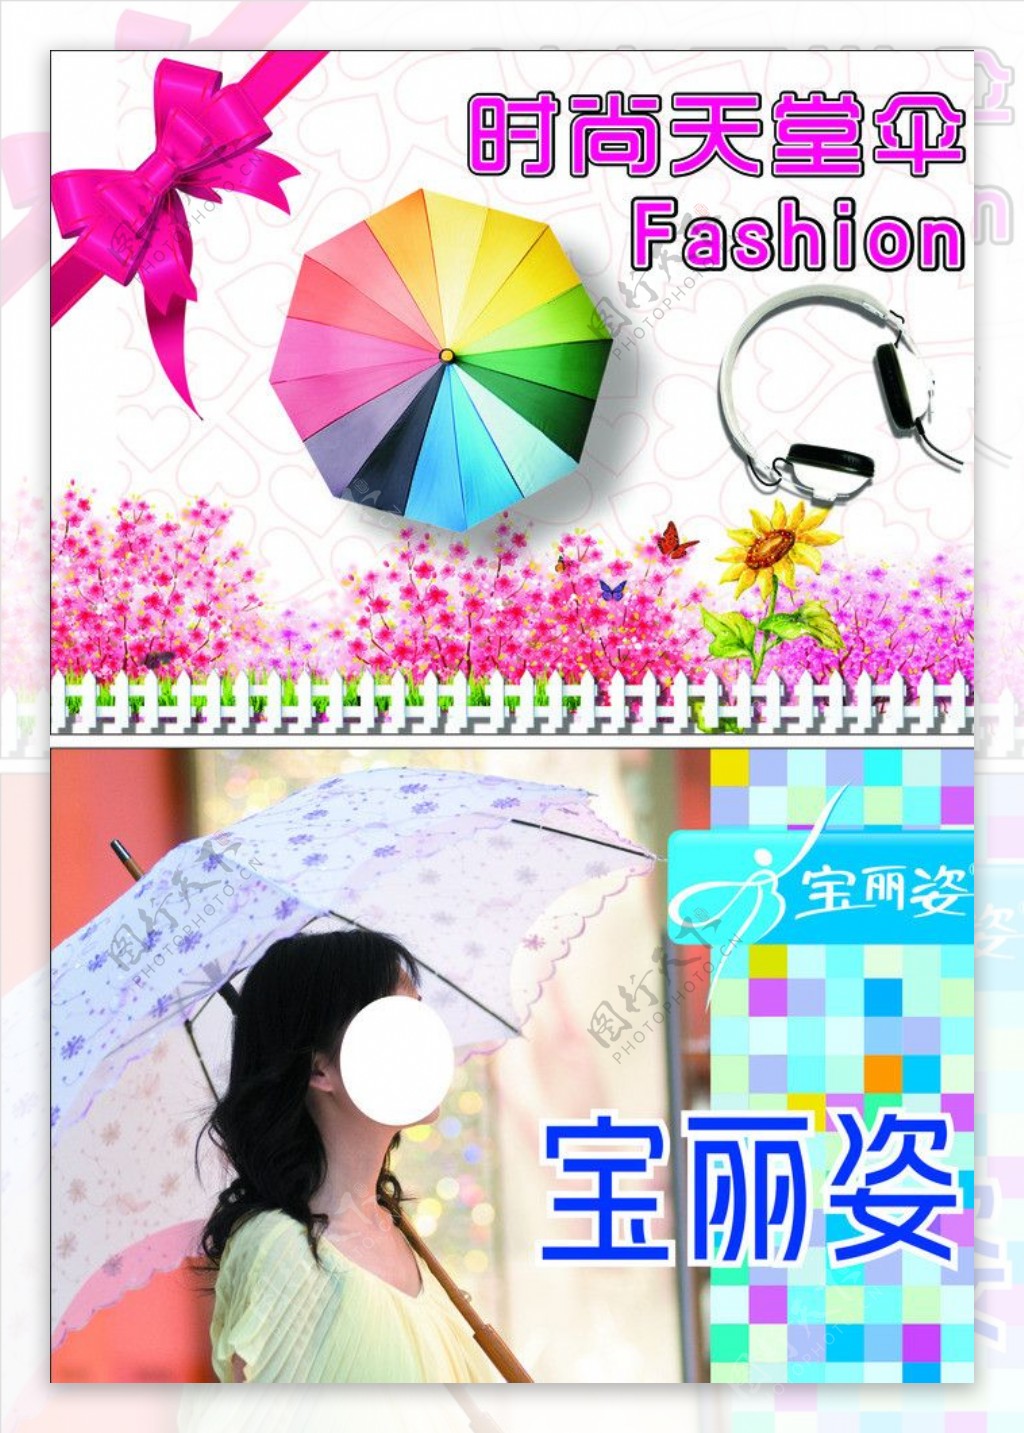 伞创意广告图片